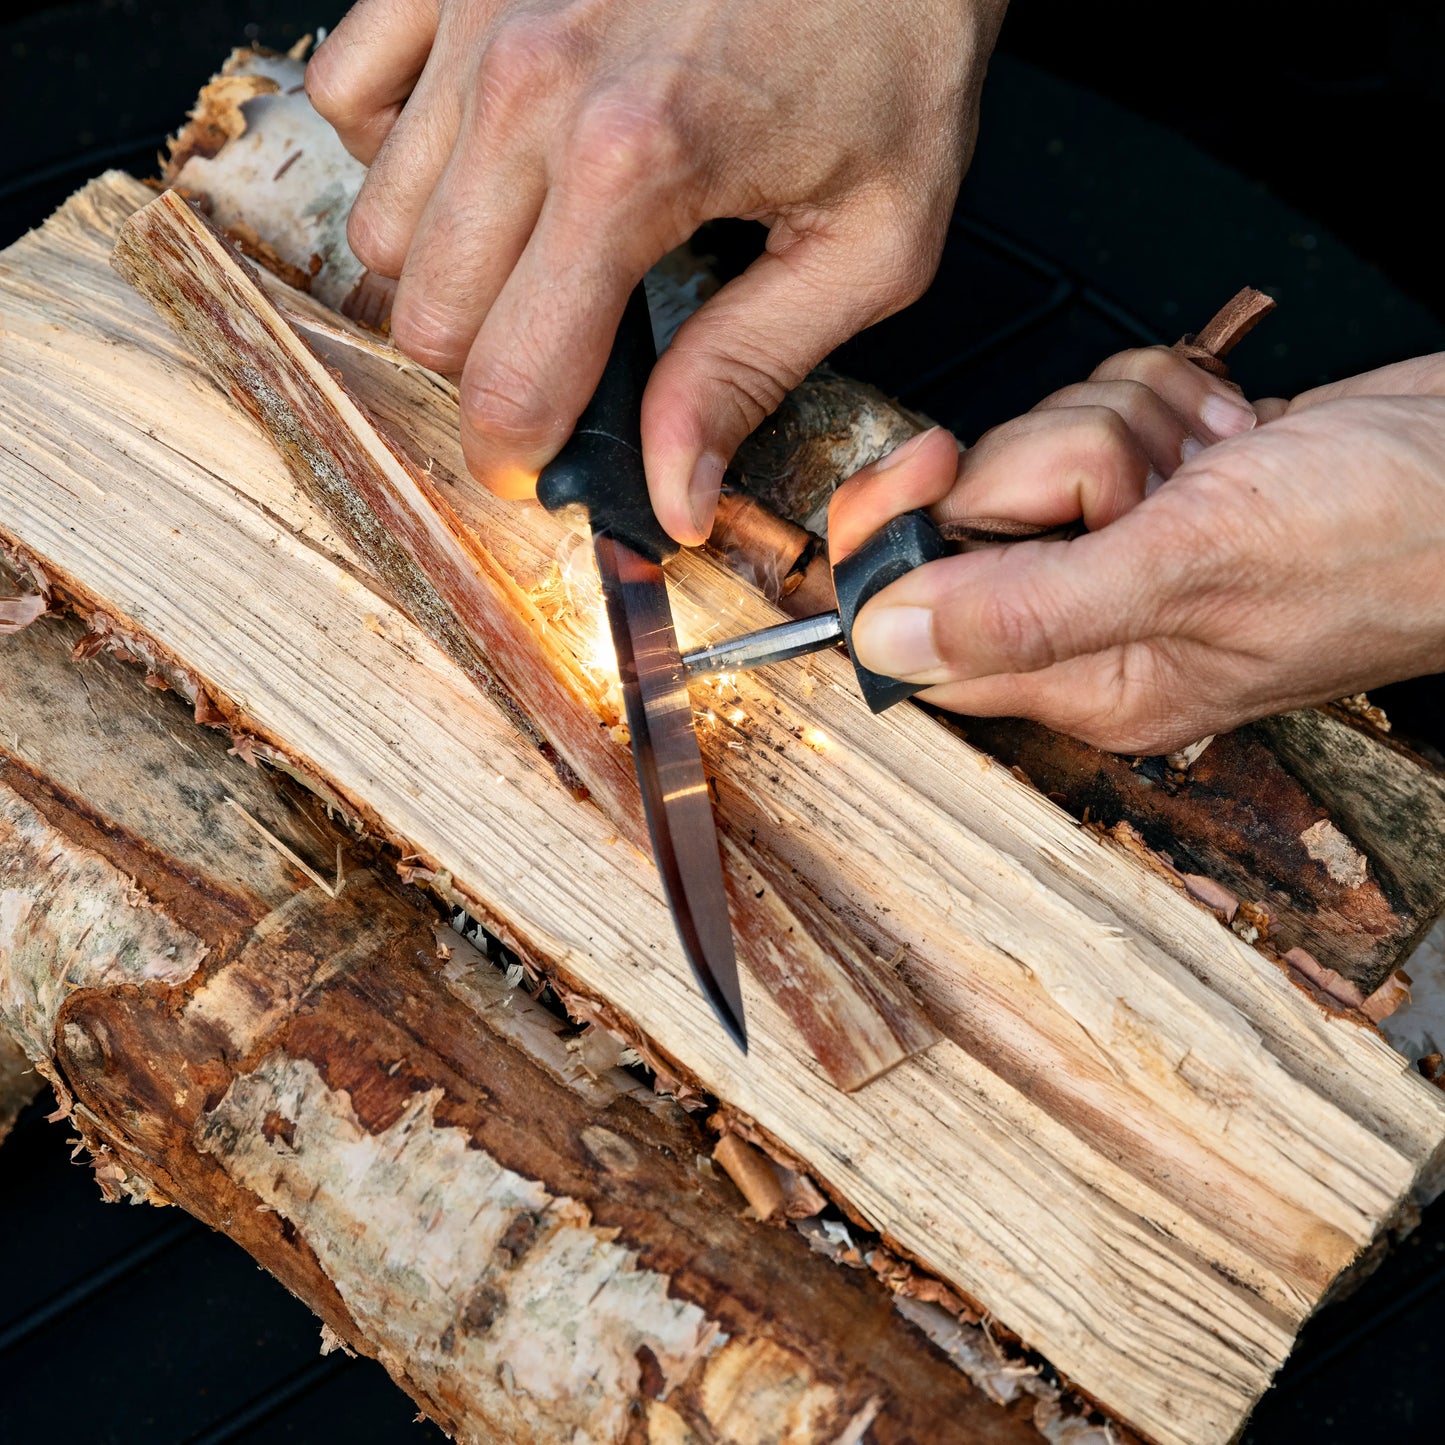 Knife striking a ferro rod on a wood log.